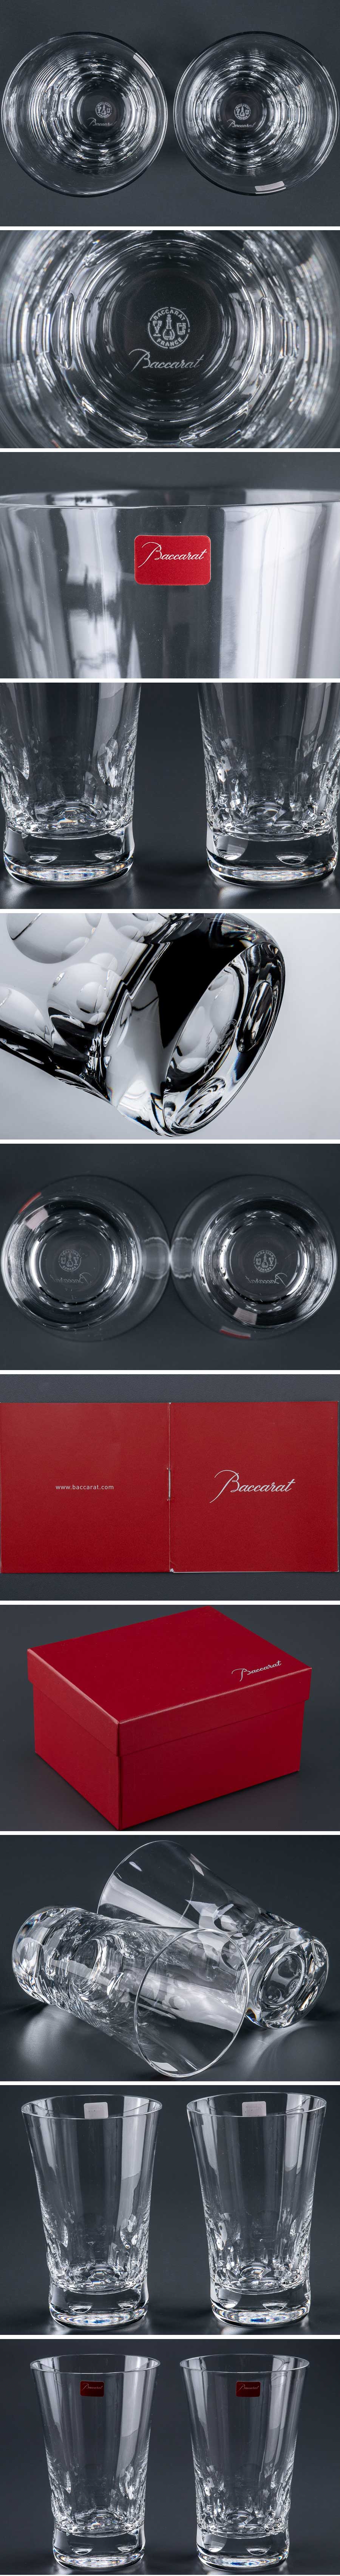 格安超激得『 バカラ baccarat 「 ベルーガ 」 タンブラー グラス 2客 箱付 9929 』 2個組 洋食器 ブランド テーブルウェア クリスタルガラス 工芸ガラス